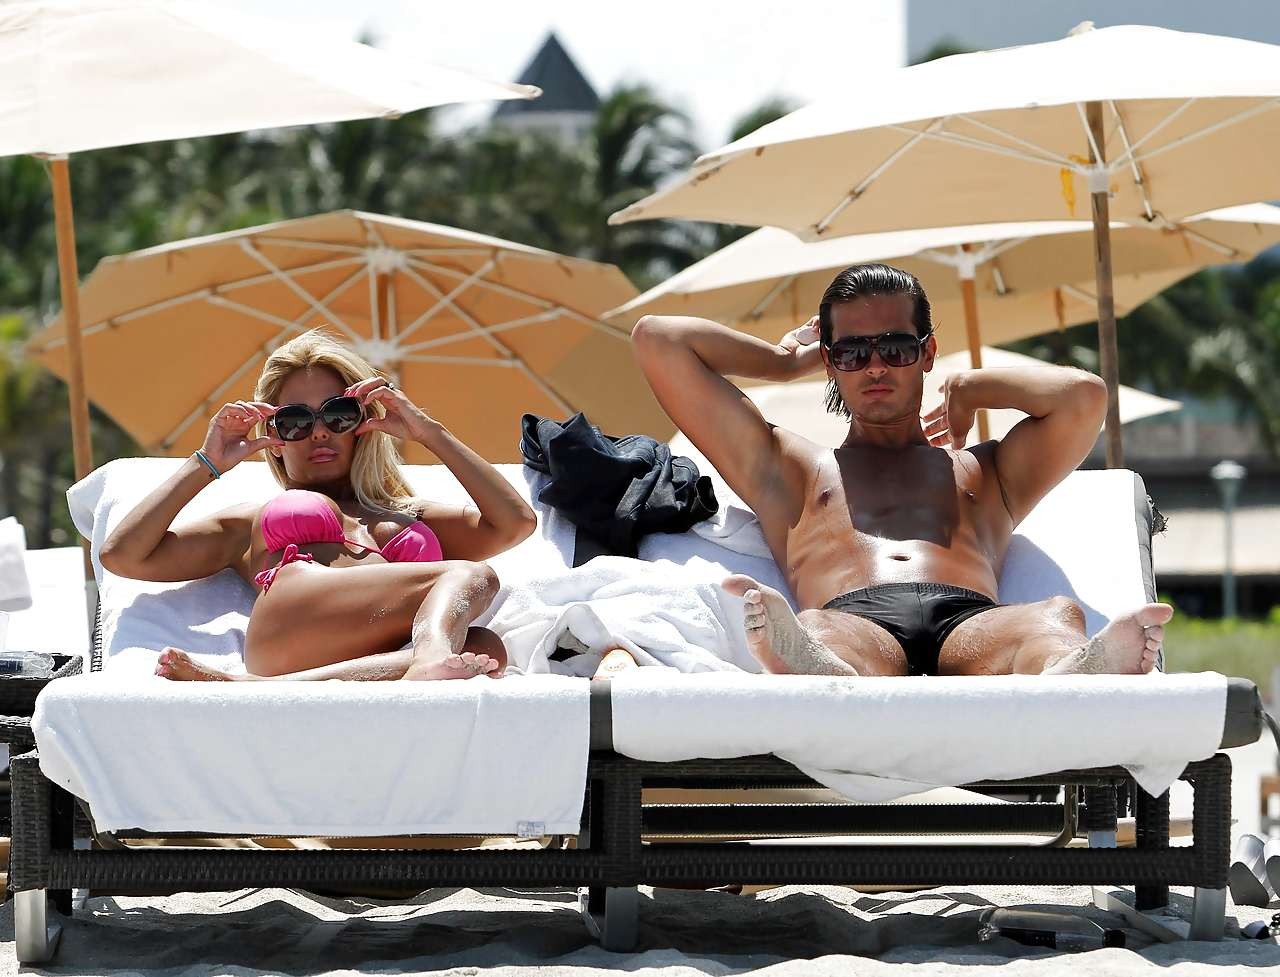 Shauna sand s'amuse avec son petit ami en bikini rose sur la plage, prise par les paparazzis.
 #75296169